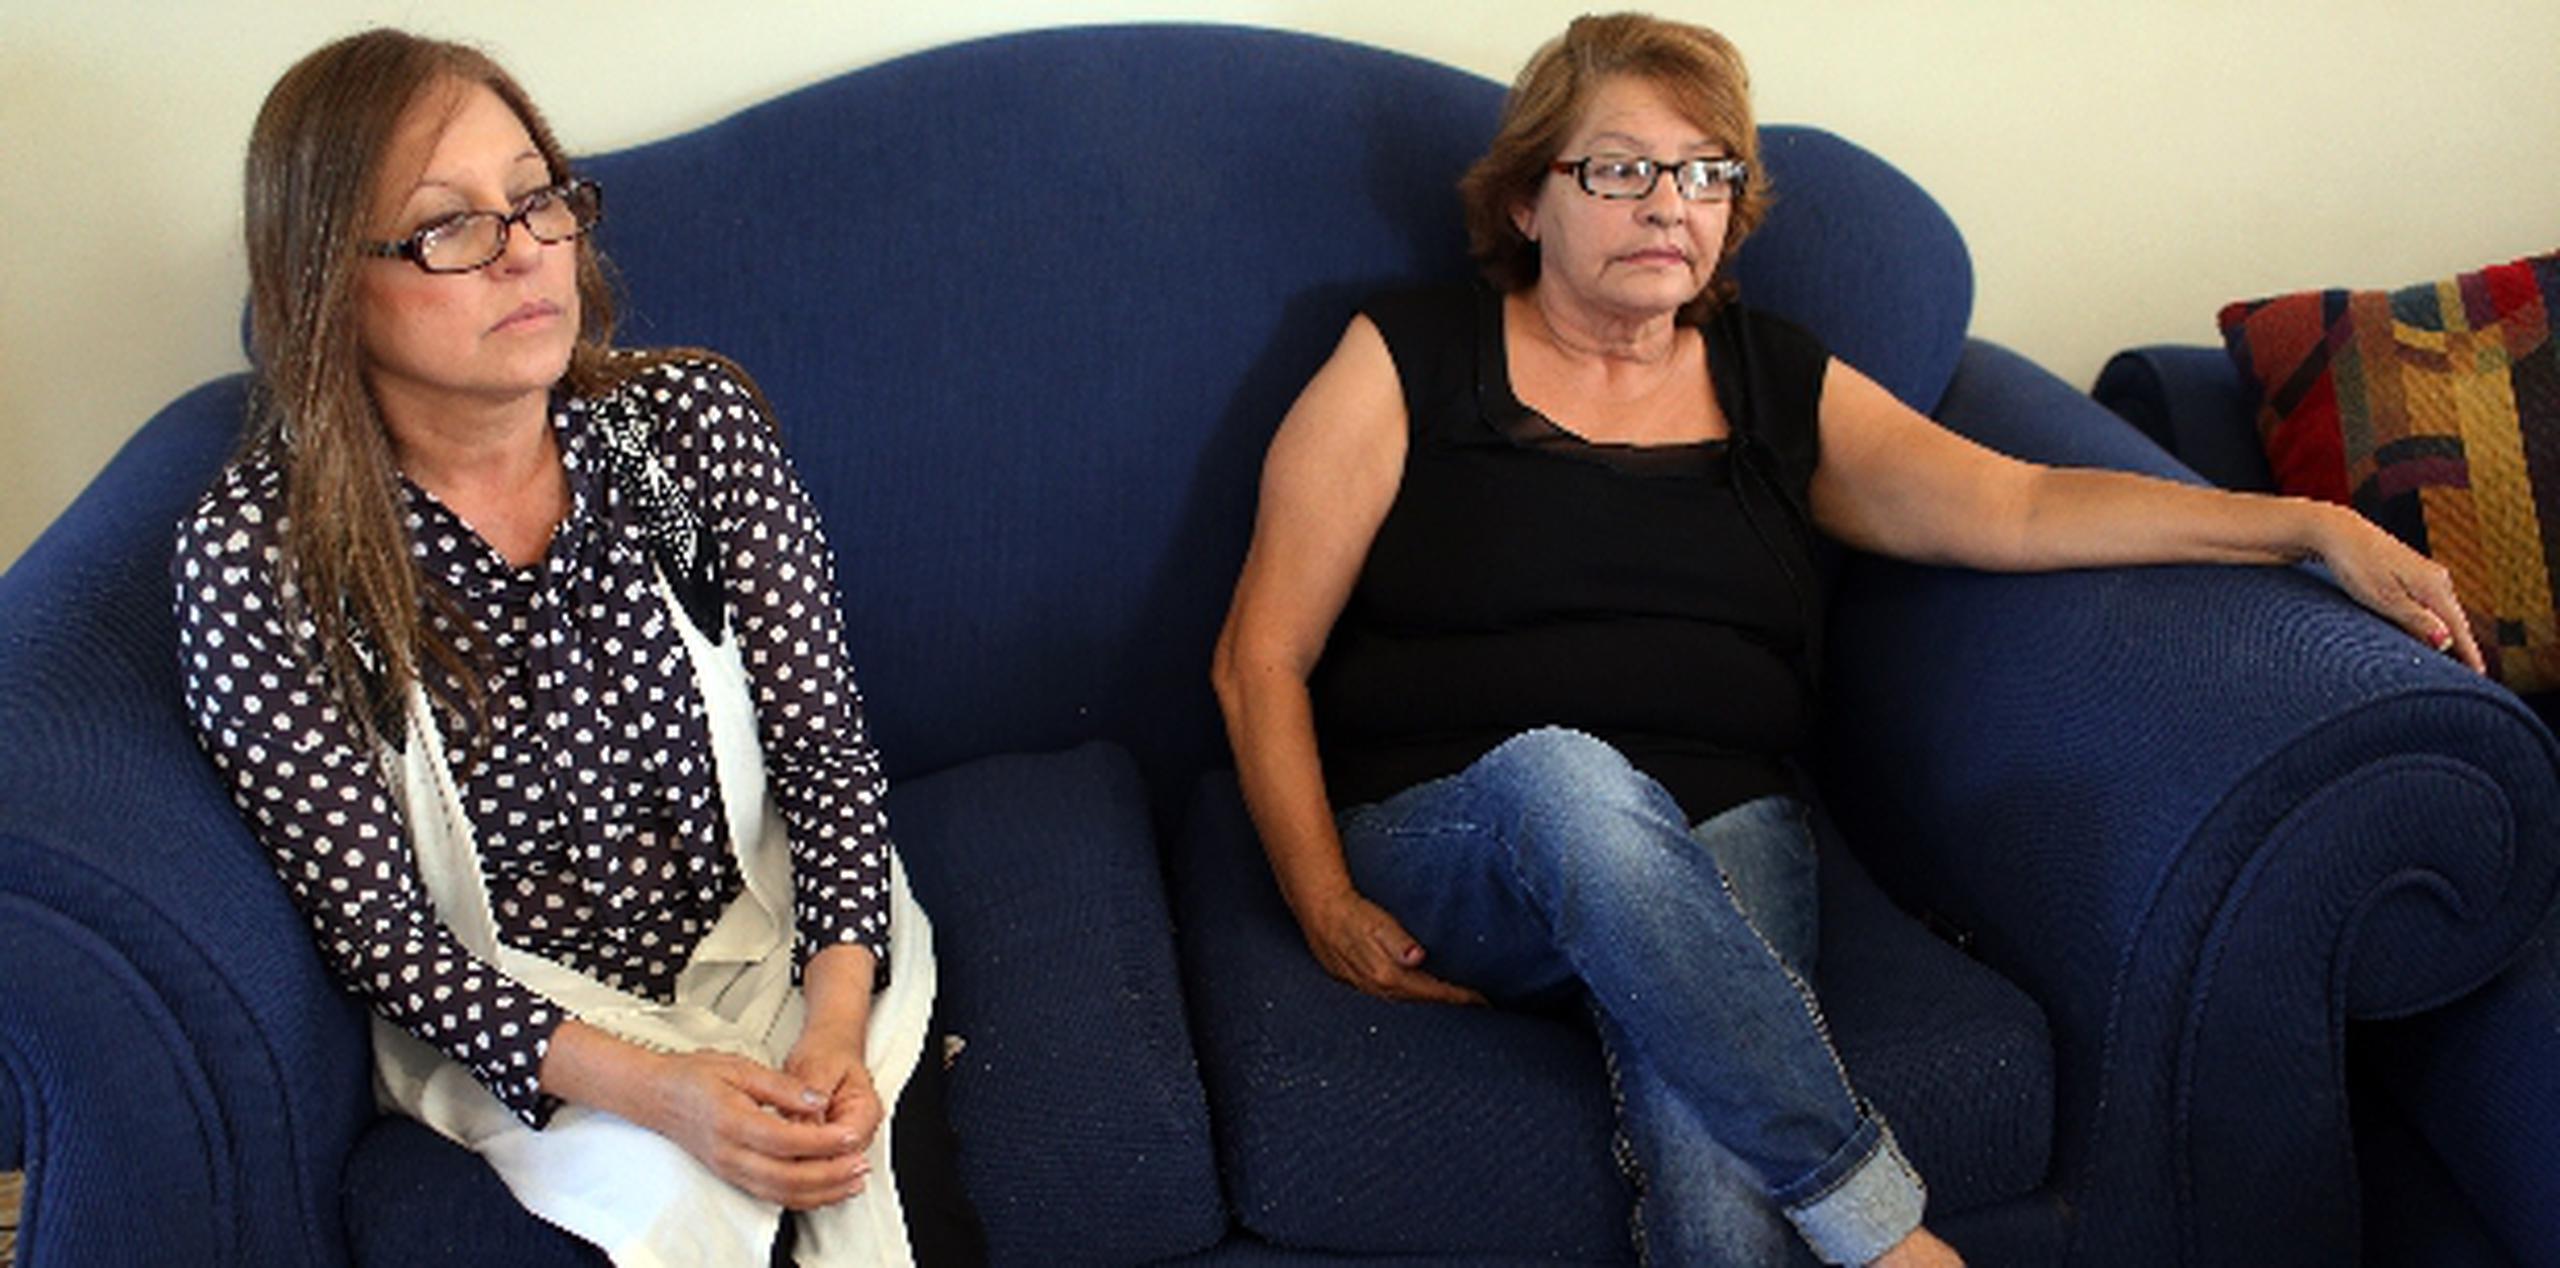 Bernardina y Teresa Rodríguez,  tías de  Lazaney, lamentan inmensamente que su sobrino no completara sus planes al retirarse de las Fuerzas Armadas.  &nbsp;(JORGE.RAMIREZ@GFRMEDIA.COM)